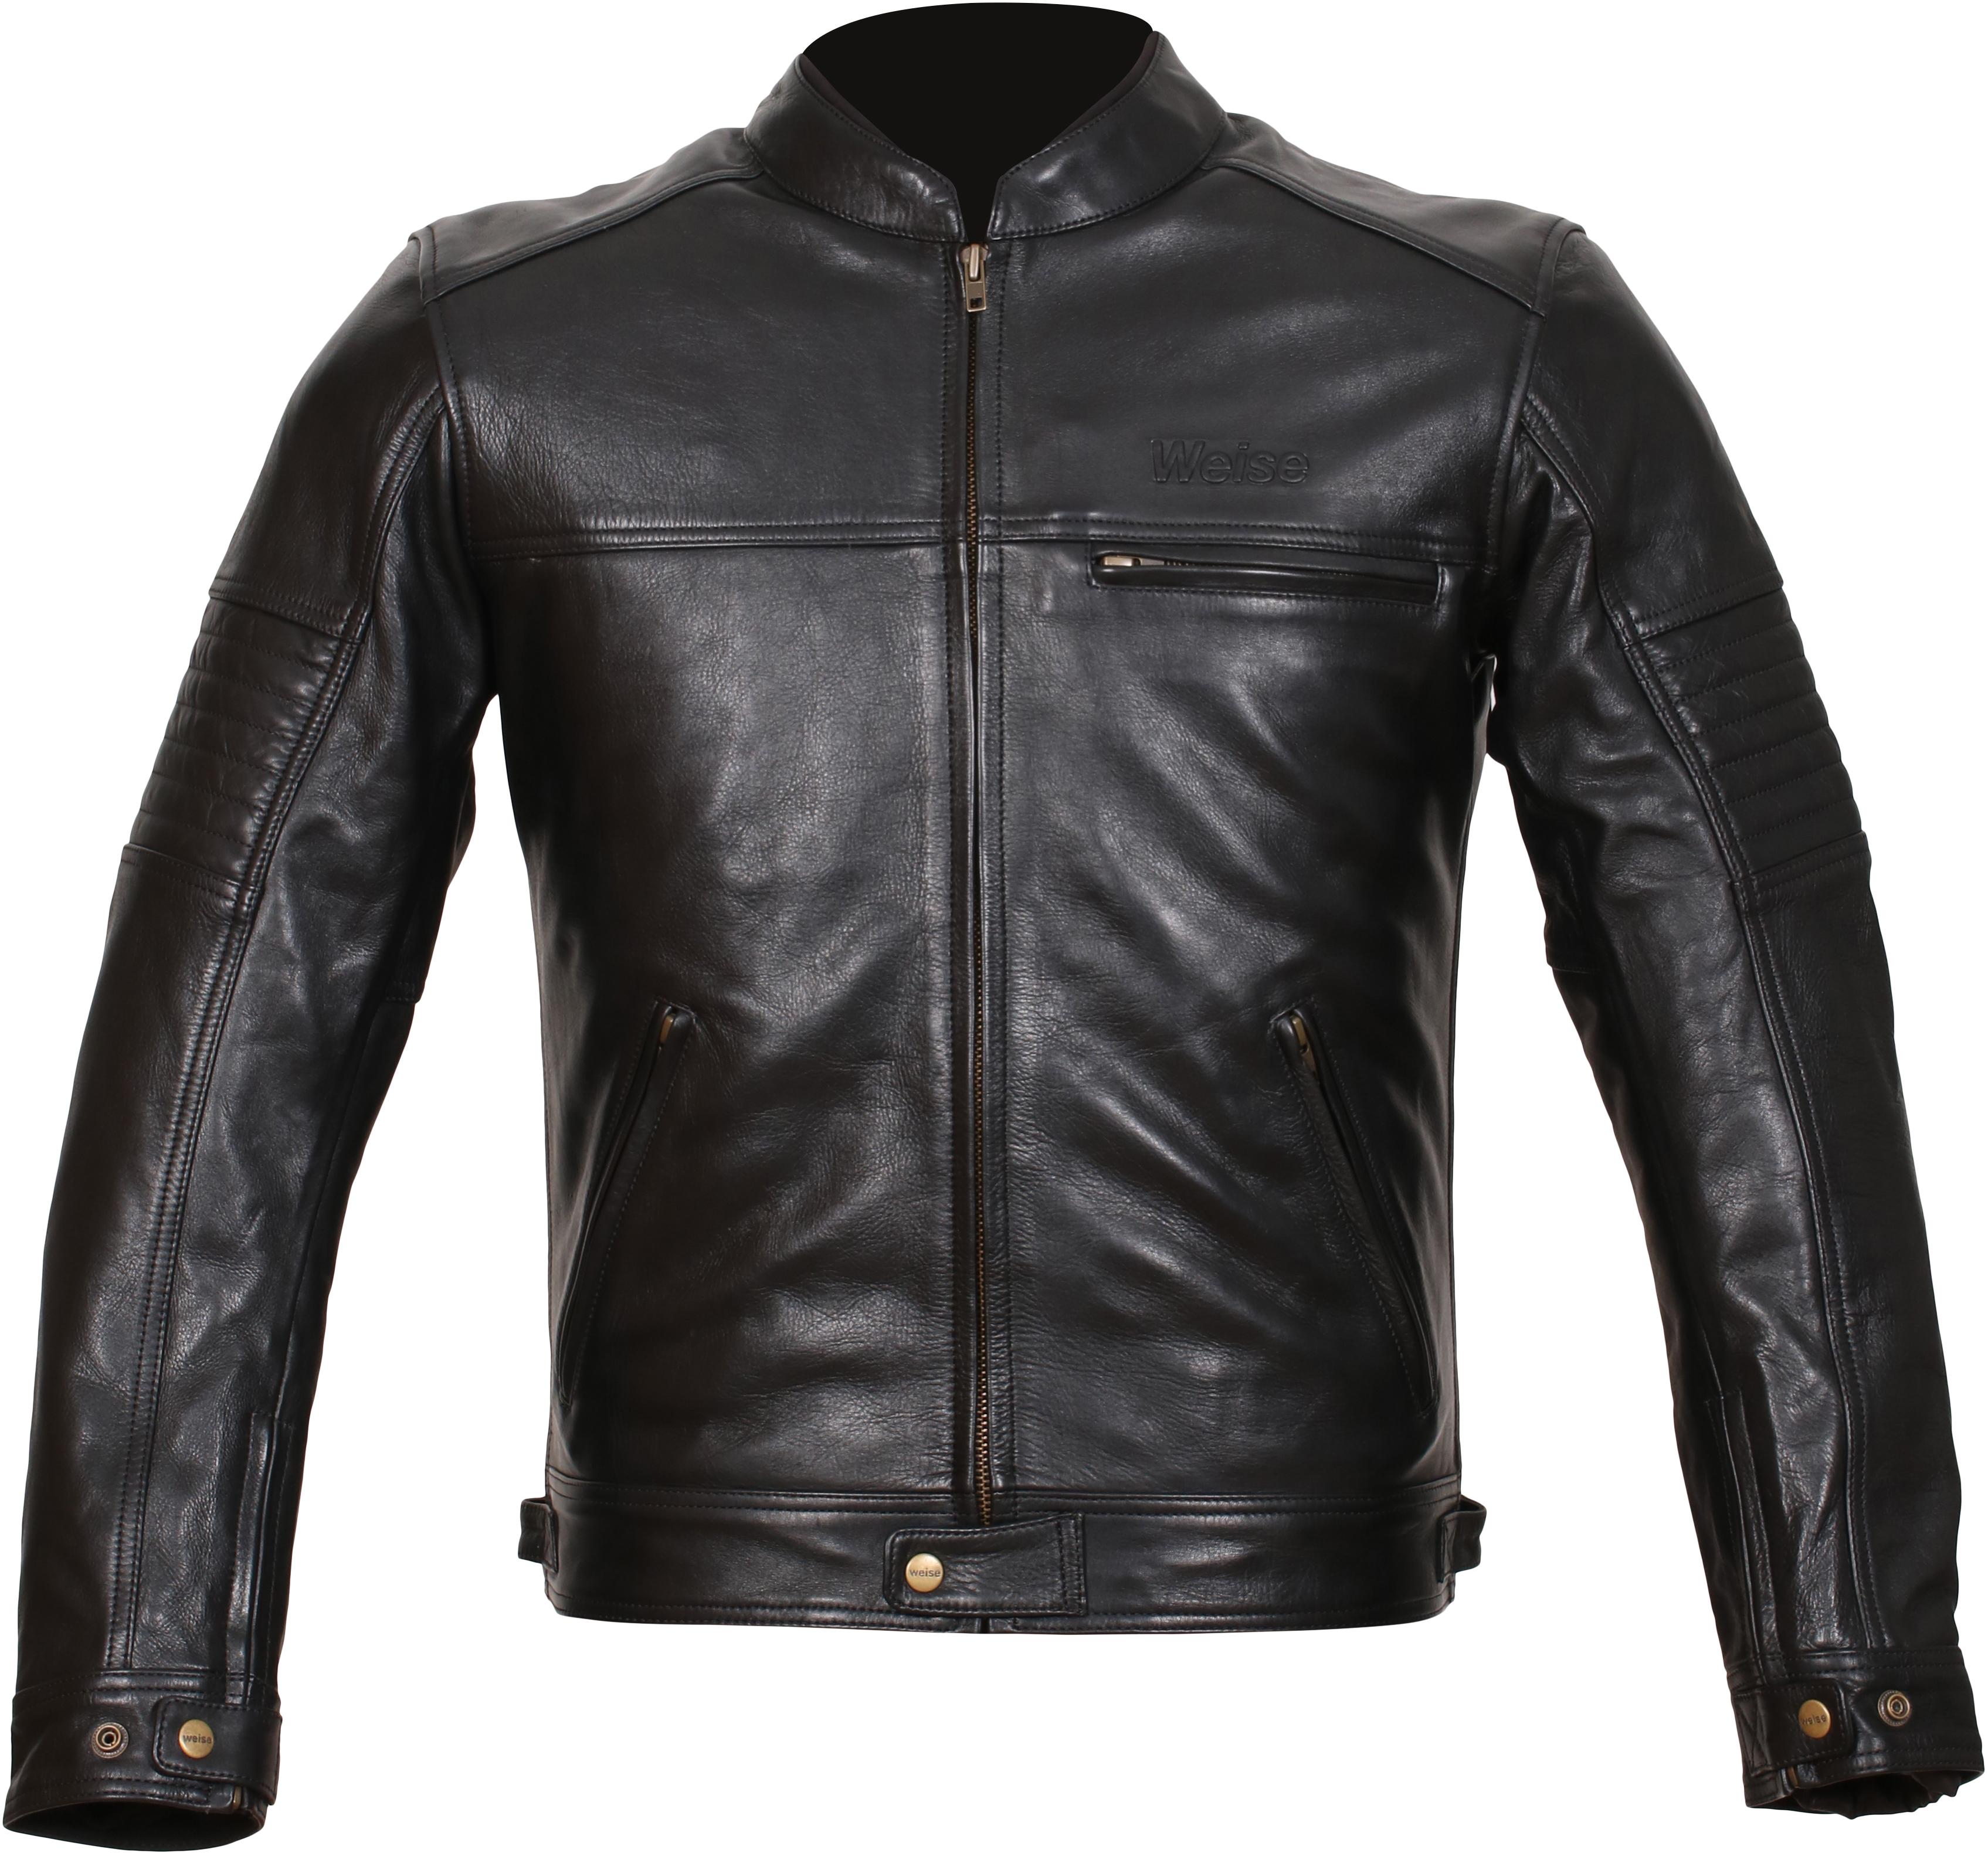 Weise Cabot Leather Motorcycle Jacket - Black, 50